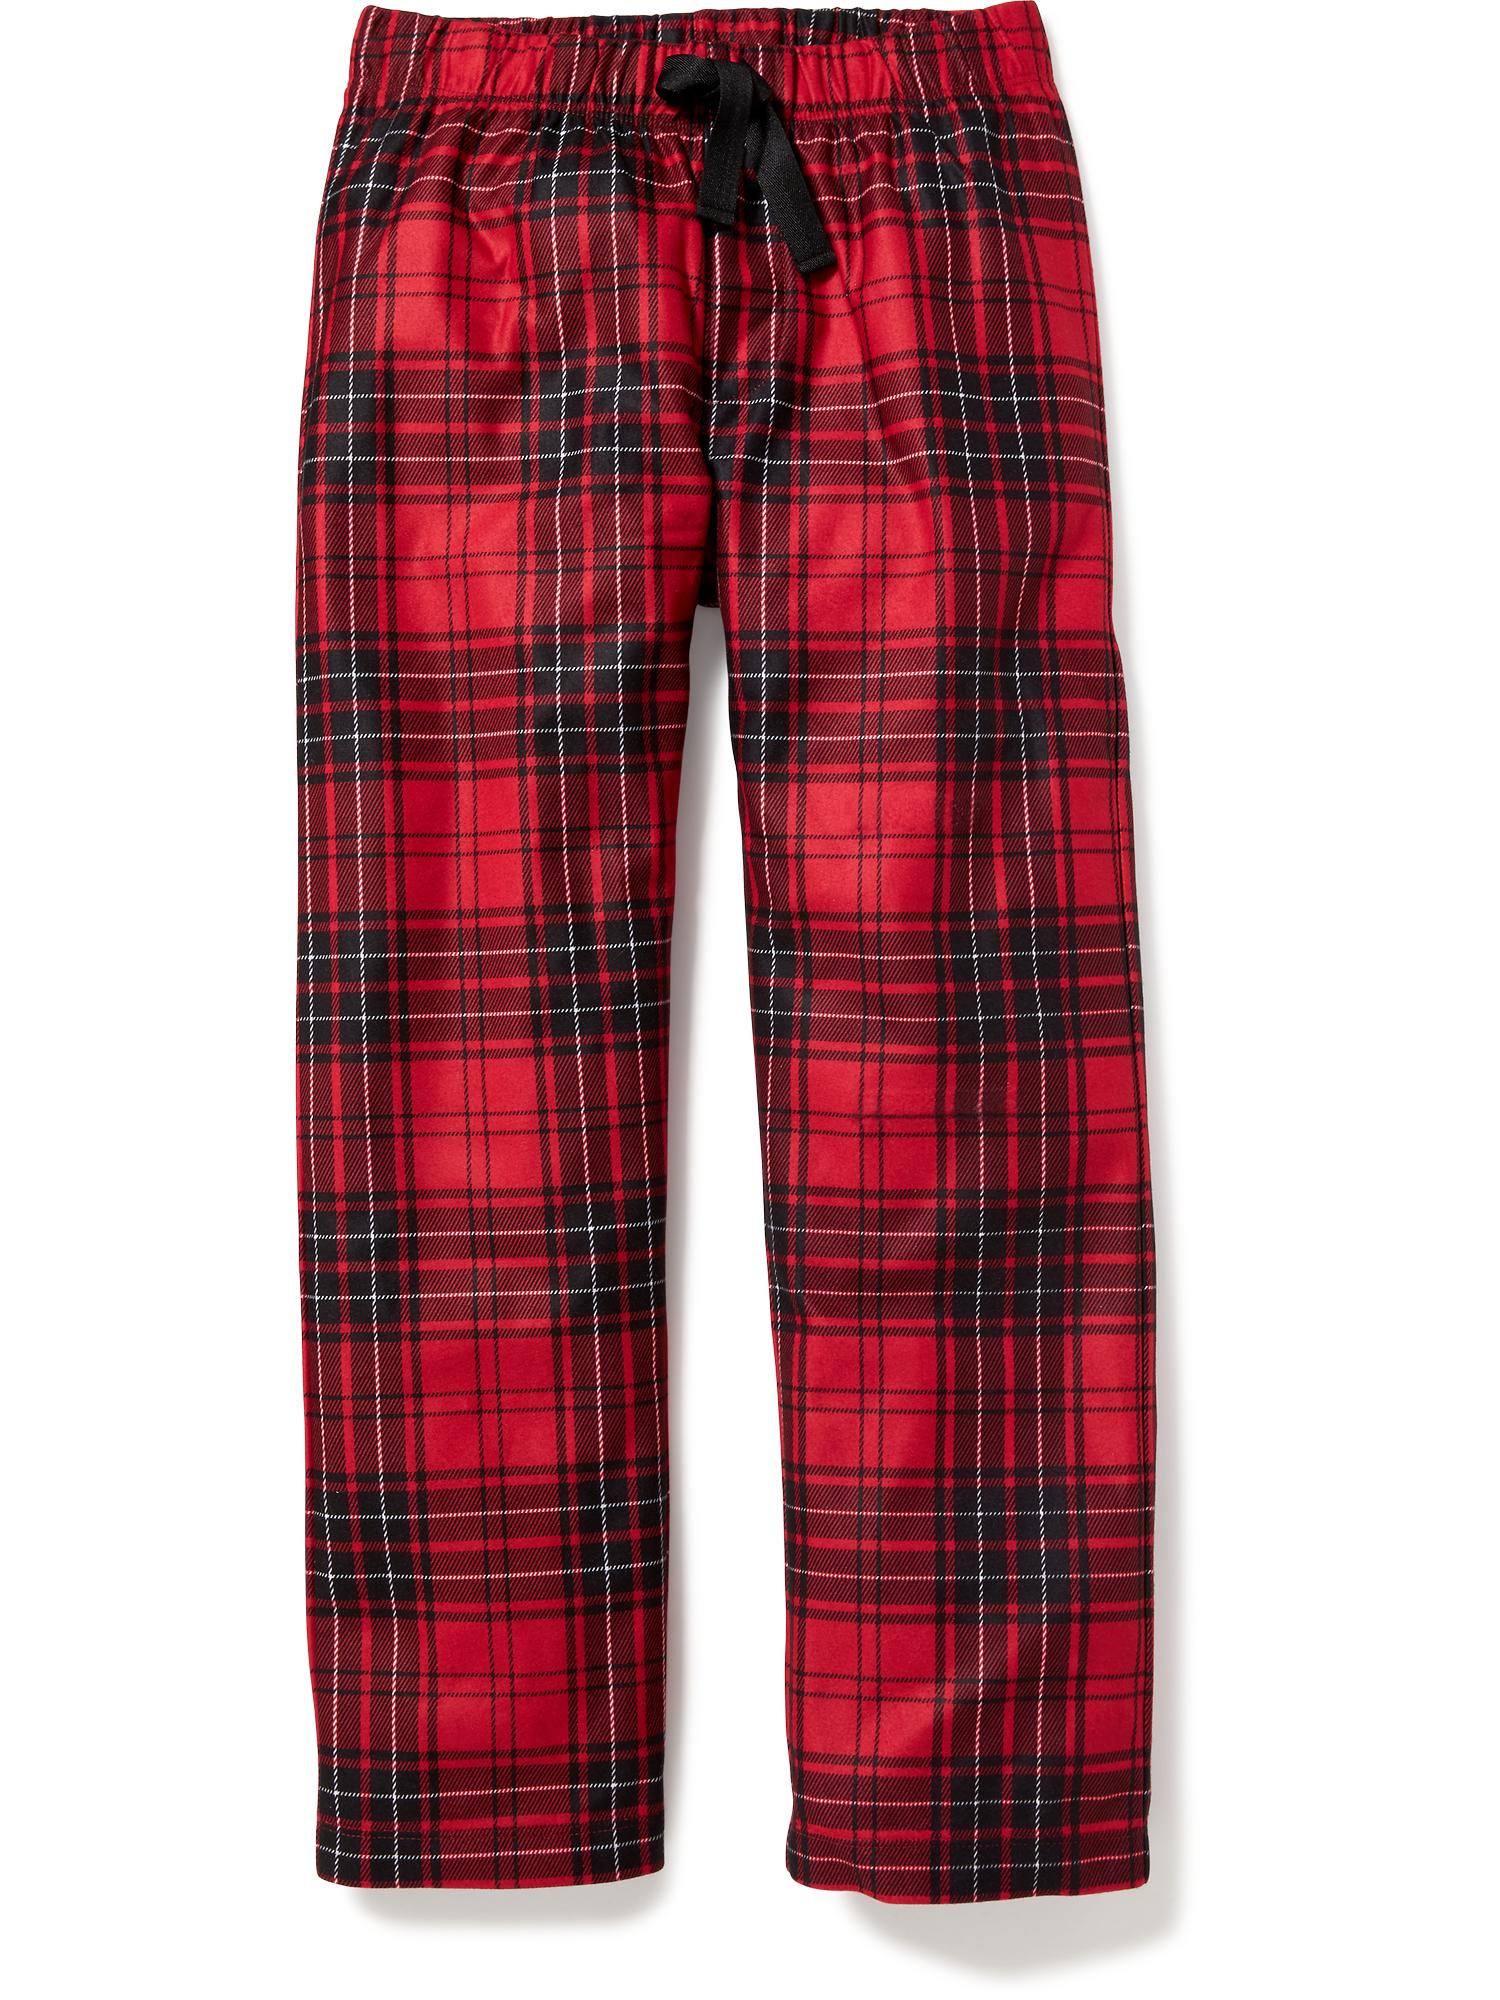 Monopoly Mens Blue Fleece Christmas Holiday Sleep Pants Pajama Bottoms  Large | eBay